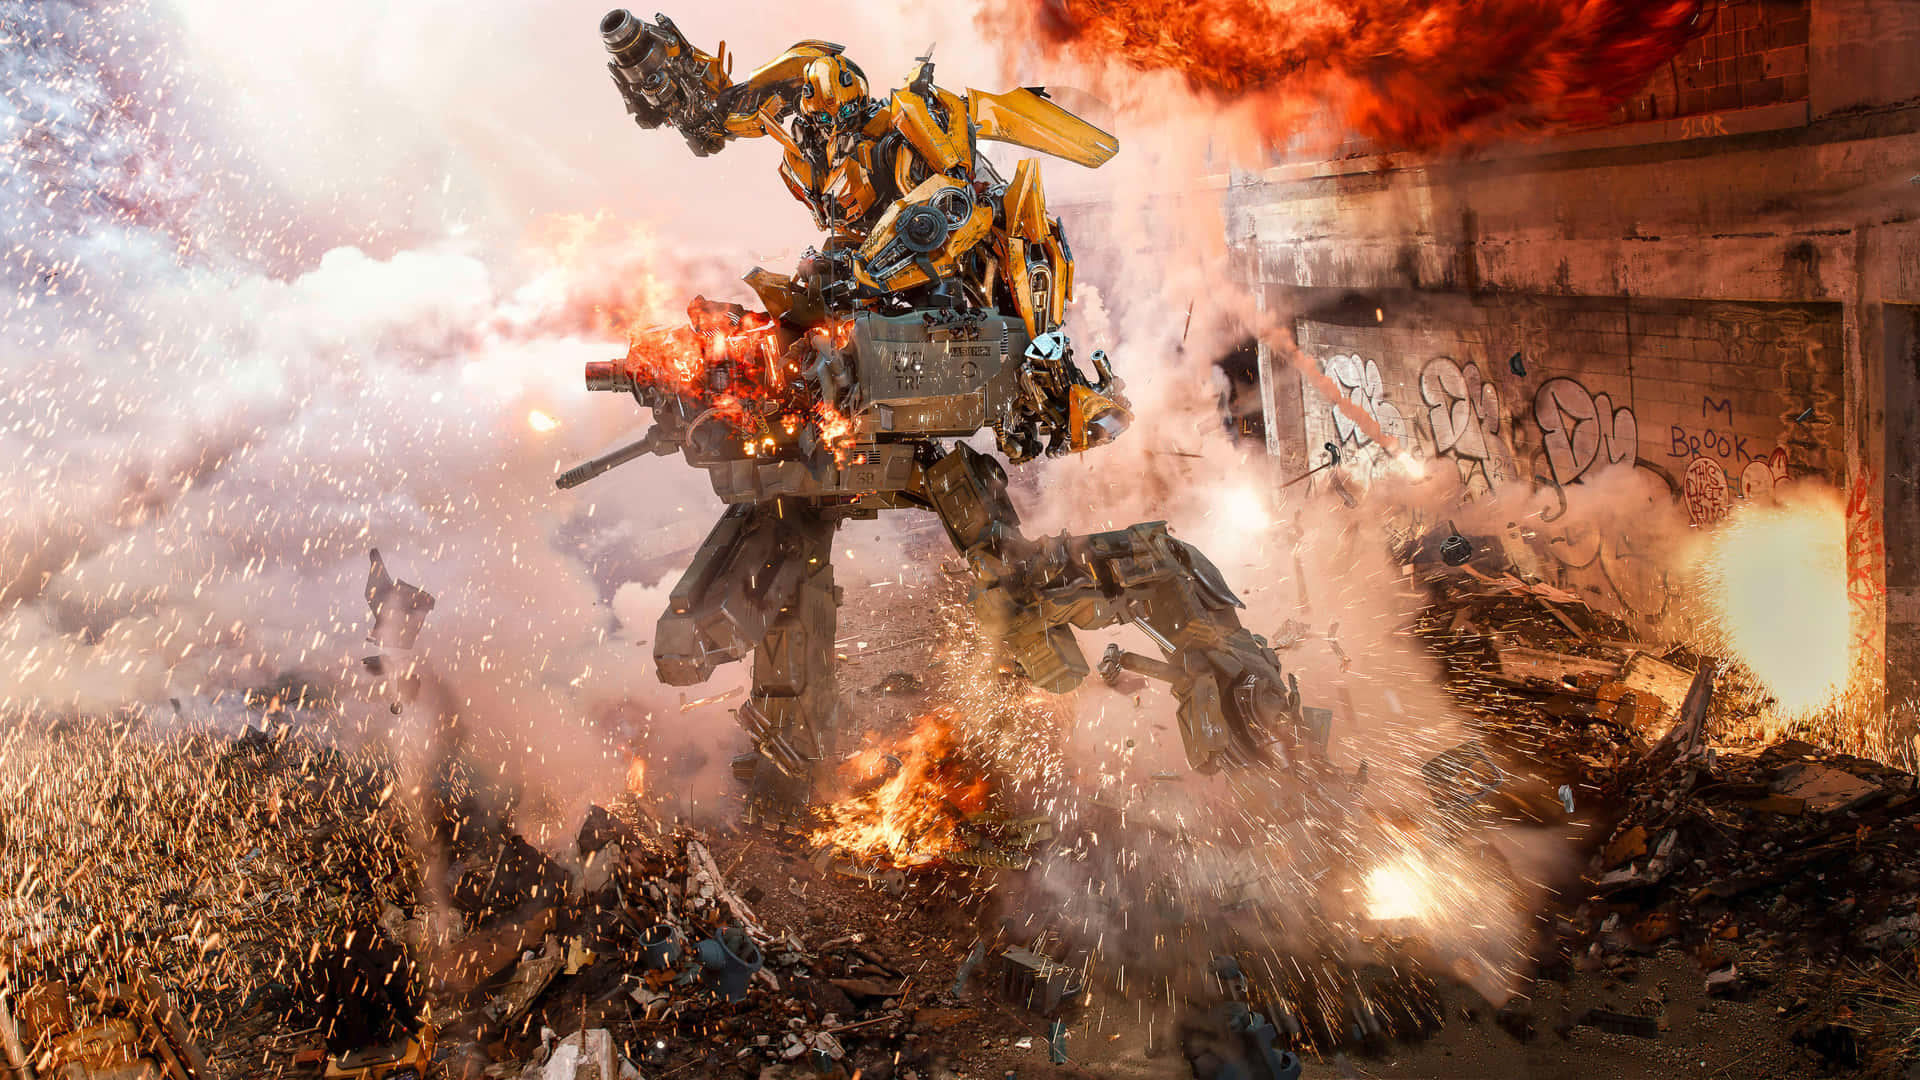 Transformers Bumblebee In An Intense Battle